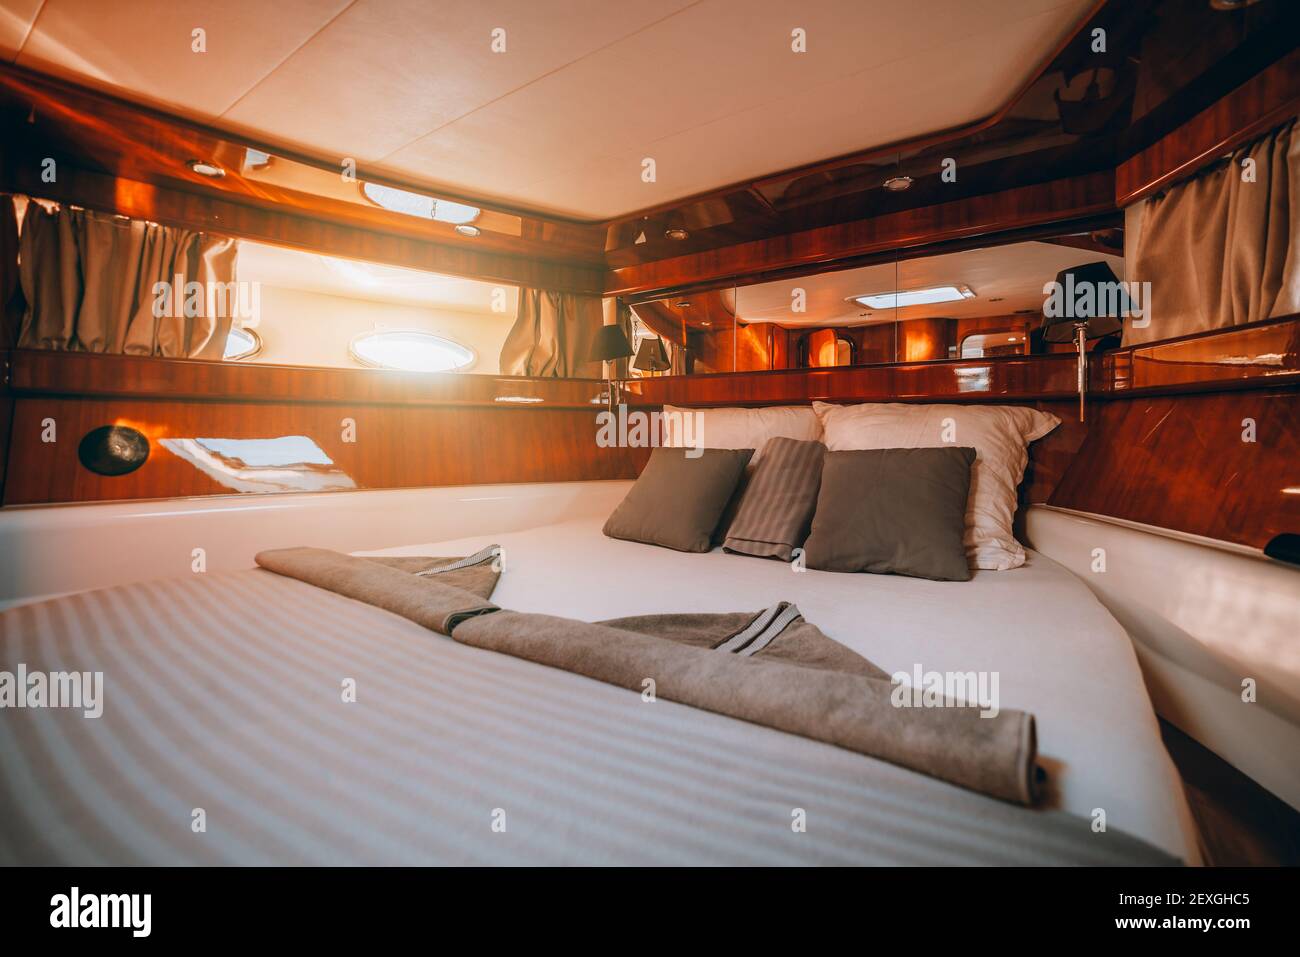 Ein Weitwinkel-Fragment eines Innenraums einer luxuriösen Bootshütte mit einem großen ordentlich gemachten Bett, lackierter Holzvertäfelung Dekoration, Streifen von Spiegeln und ein Stockfoto